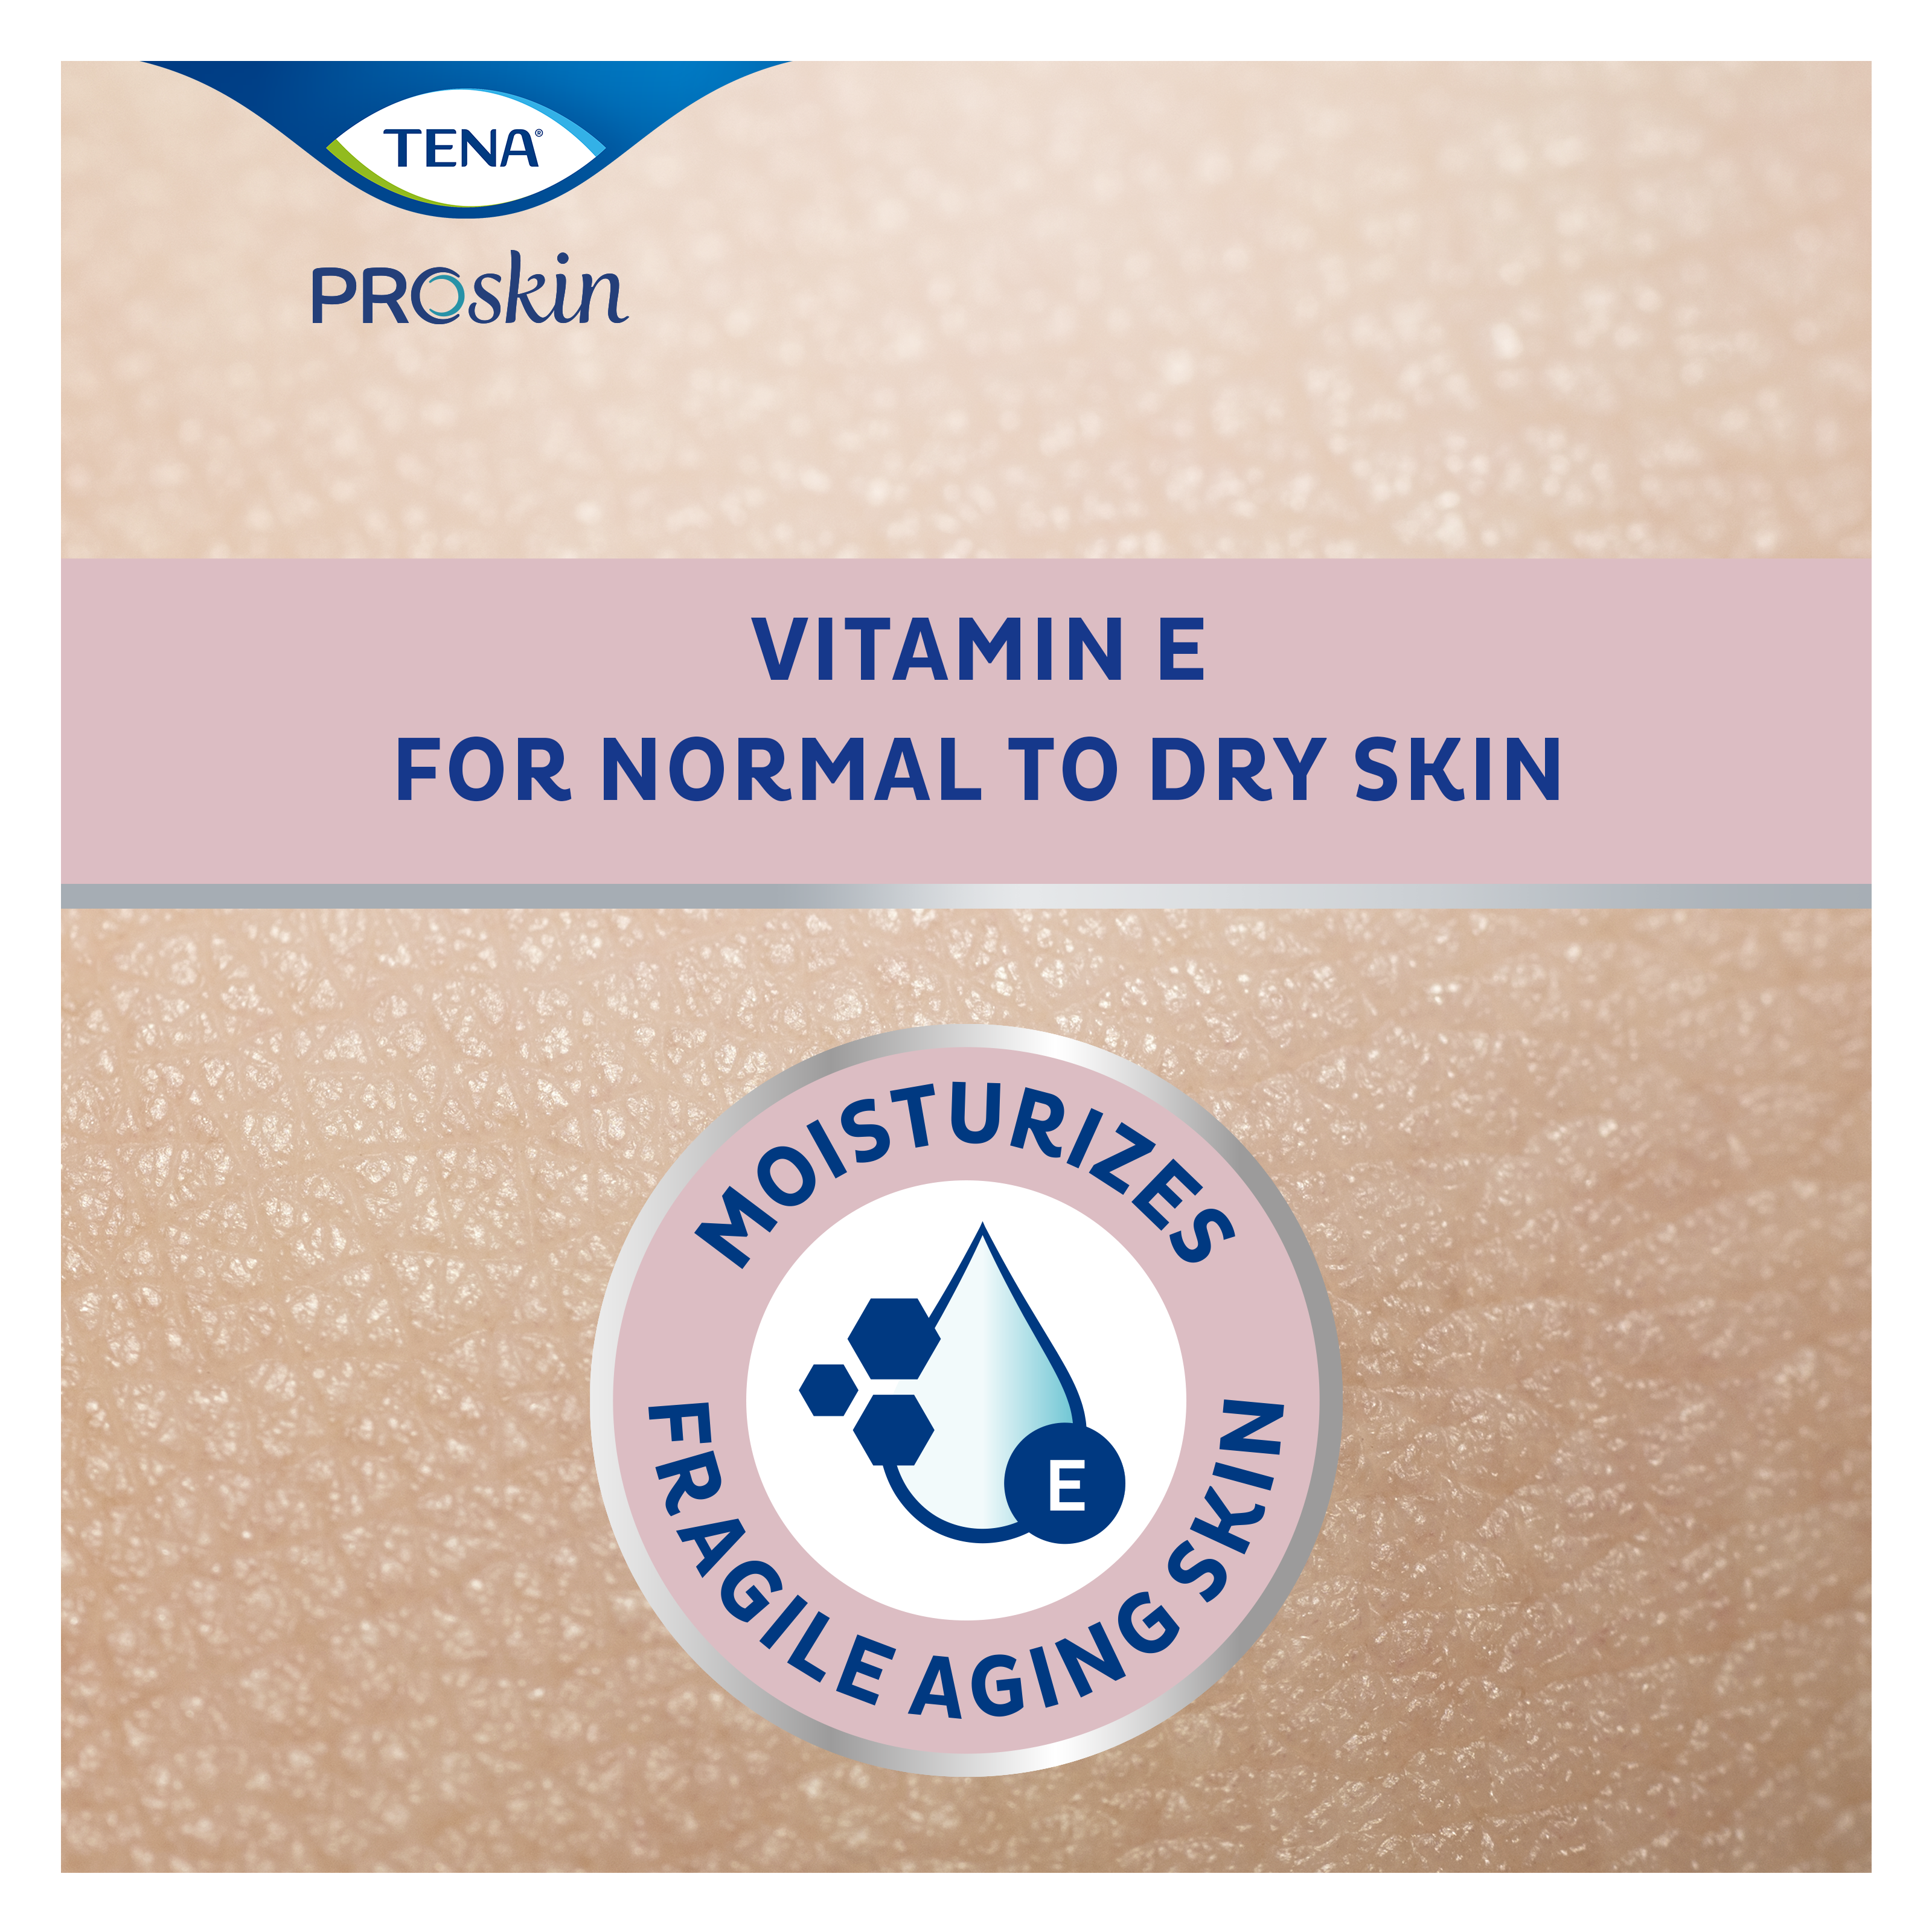 TENA ProSkin Body Lotion återfuktar äldre personers ömtåliga hud med vitamin E och kan användas på mycket torr hud